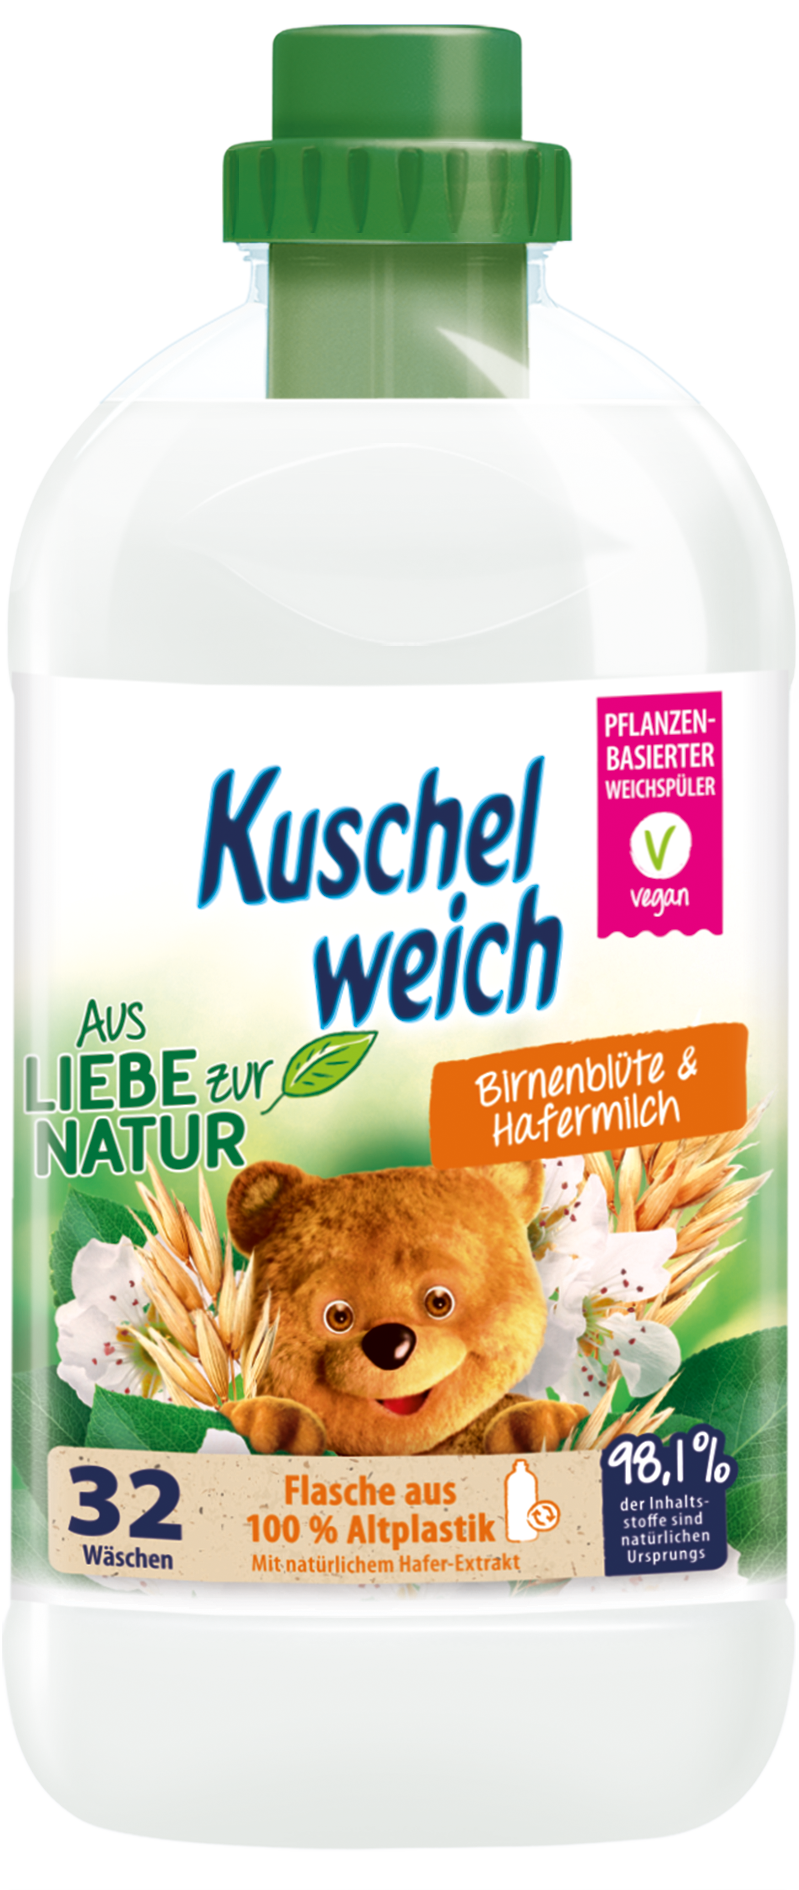 Kuschelweich Aus Liebe zur Natur 32WL